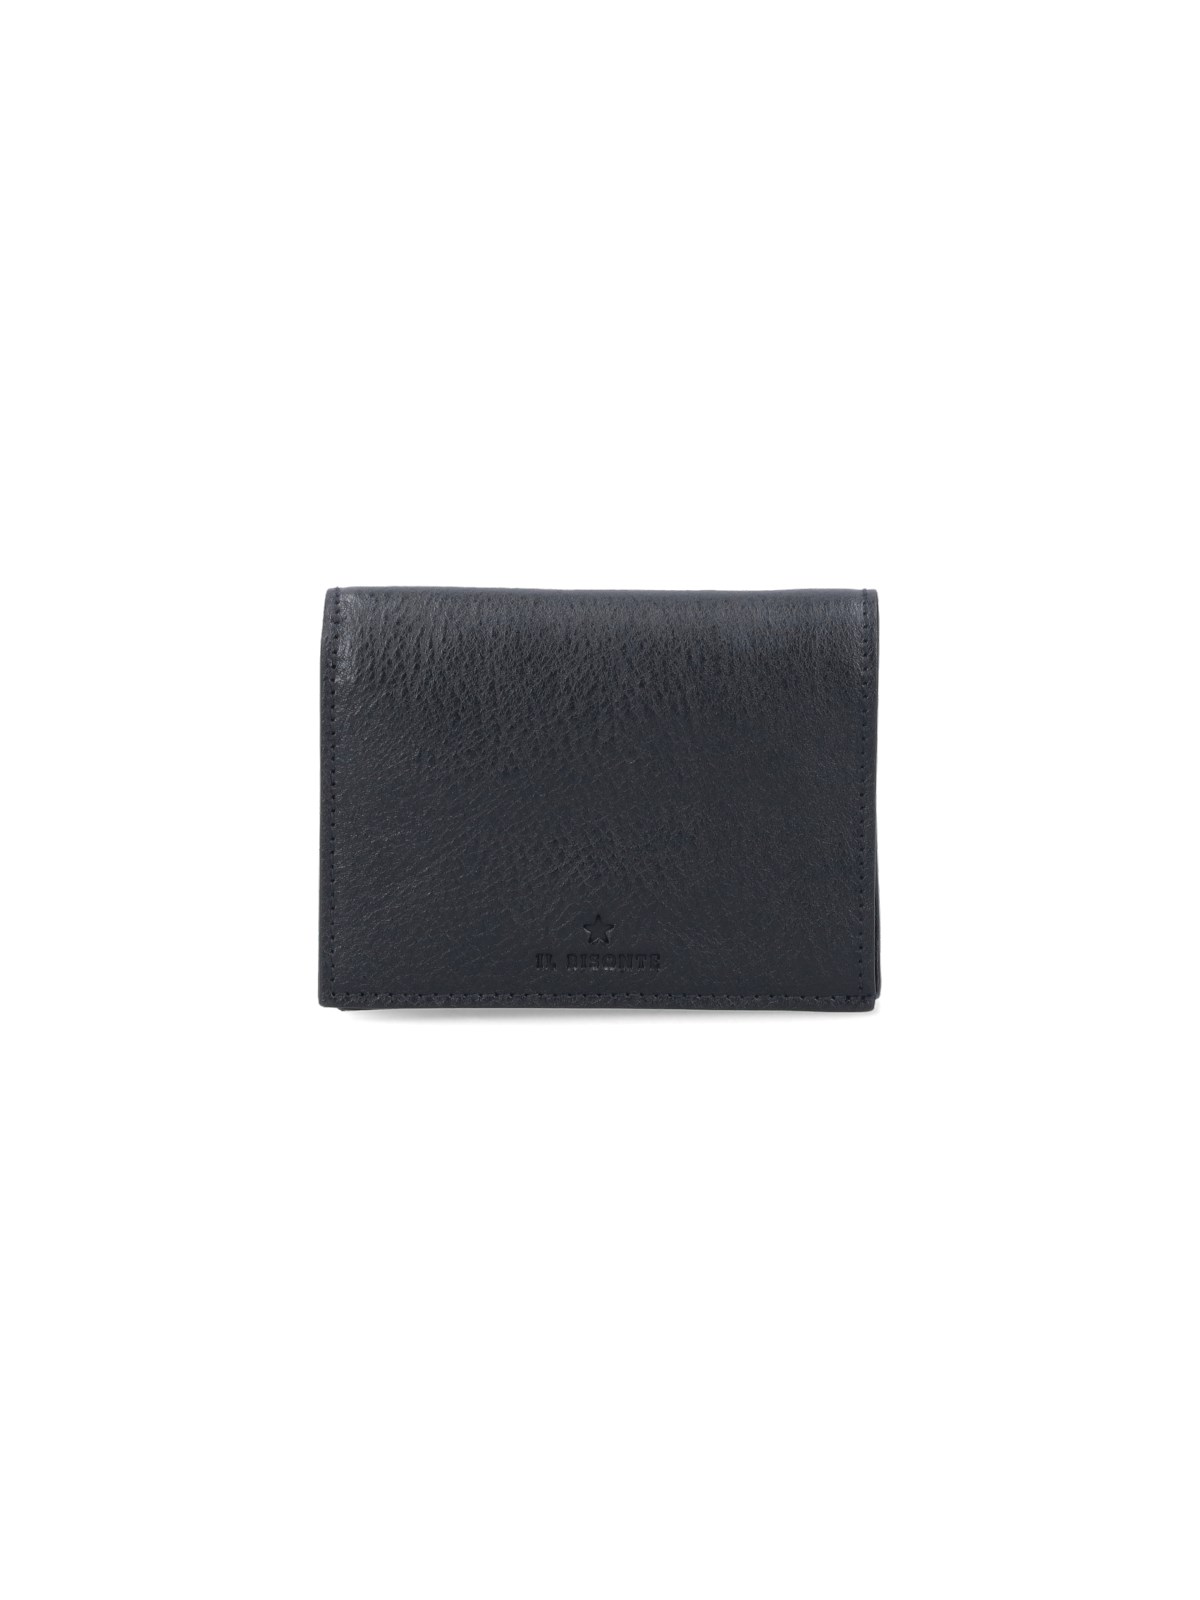 Il bisonte Bi-fold wallet oliveta available on SUGAR - 123141